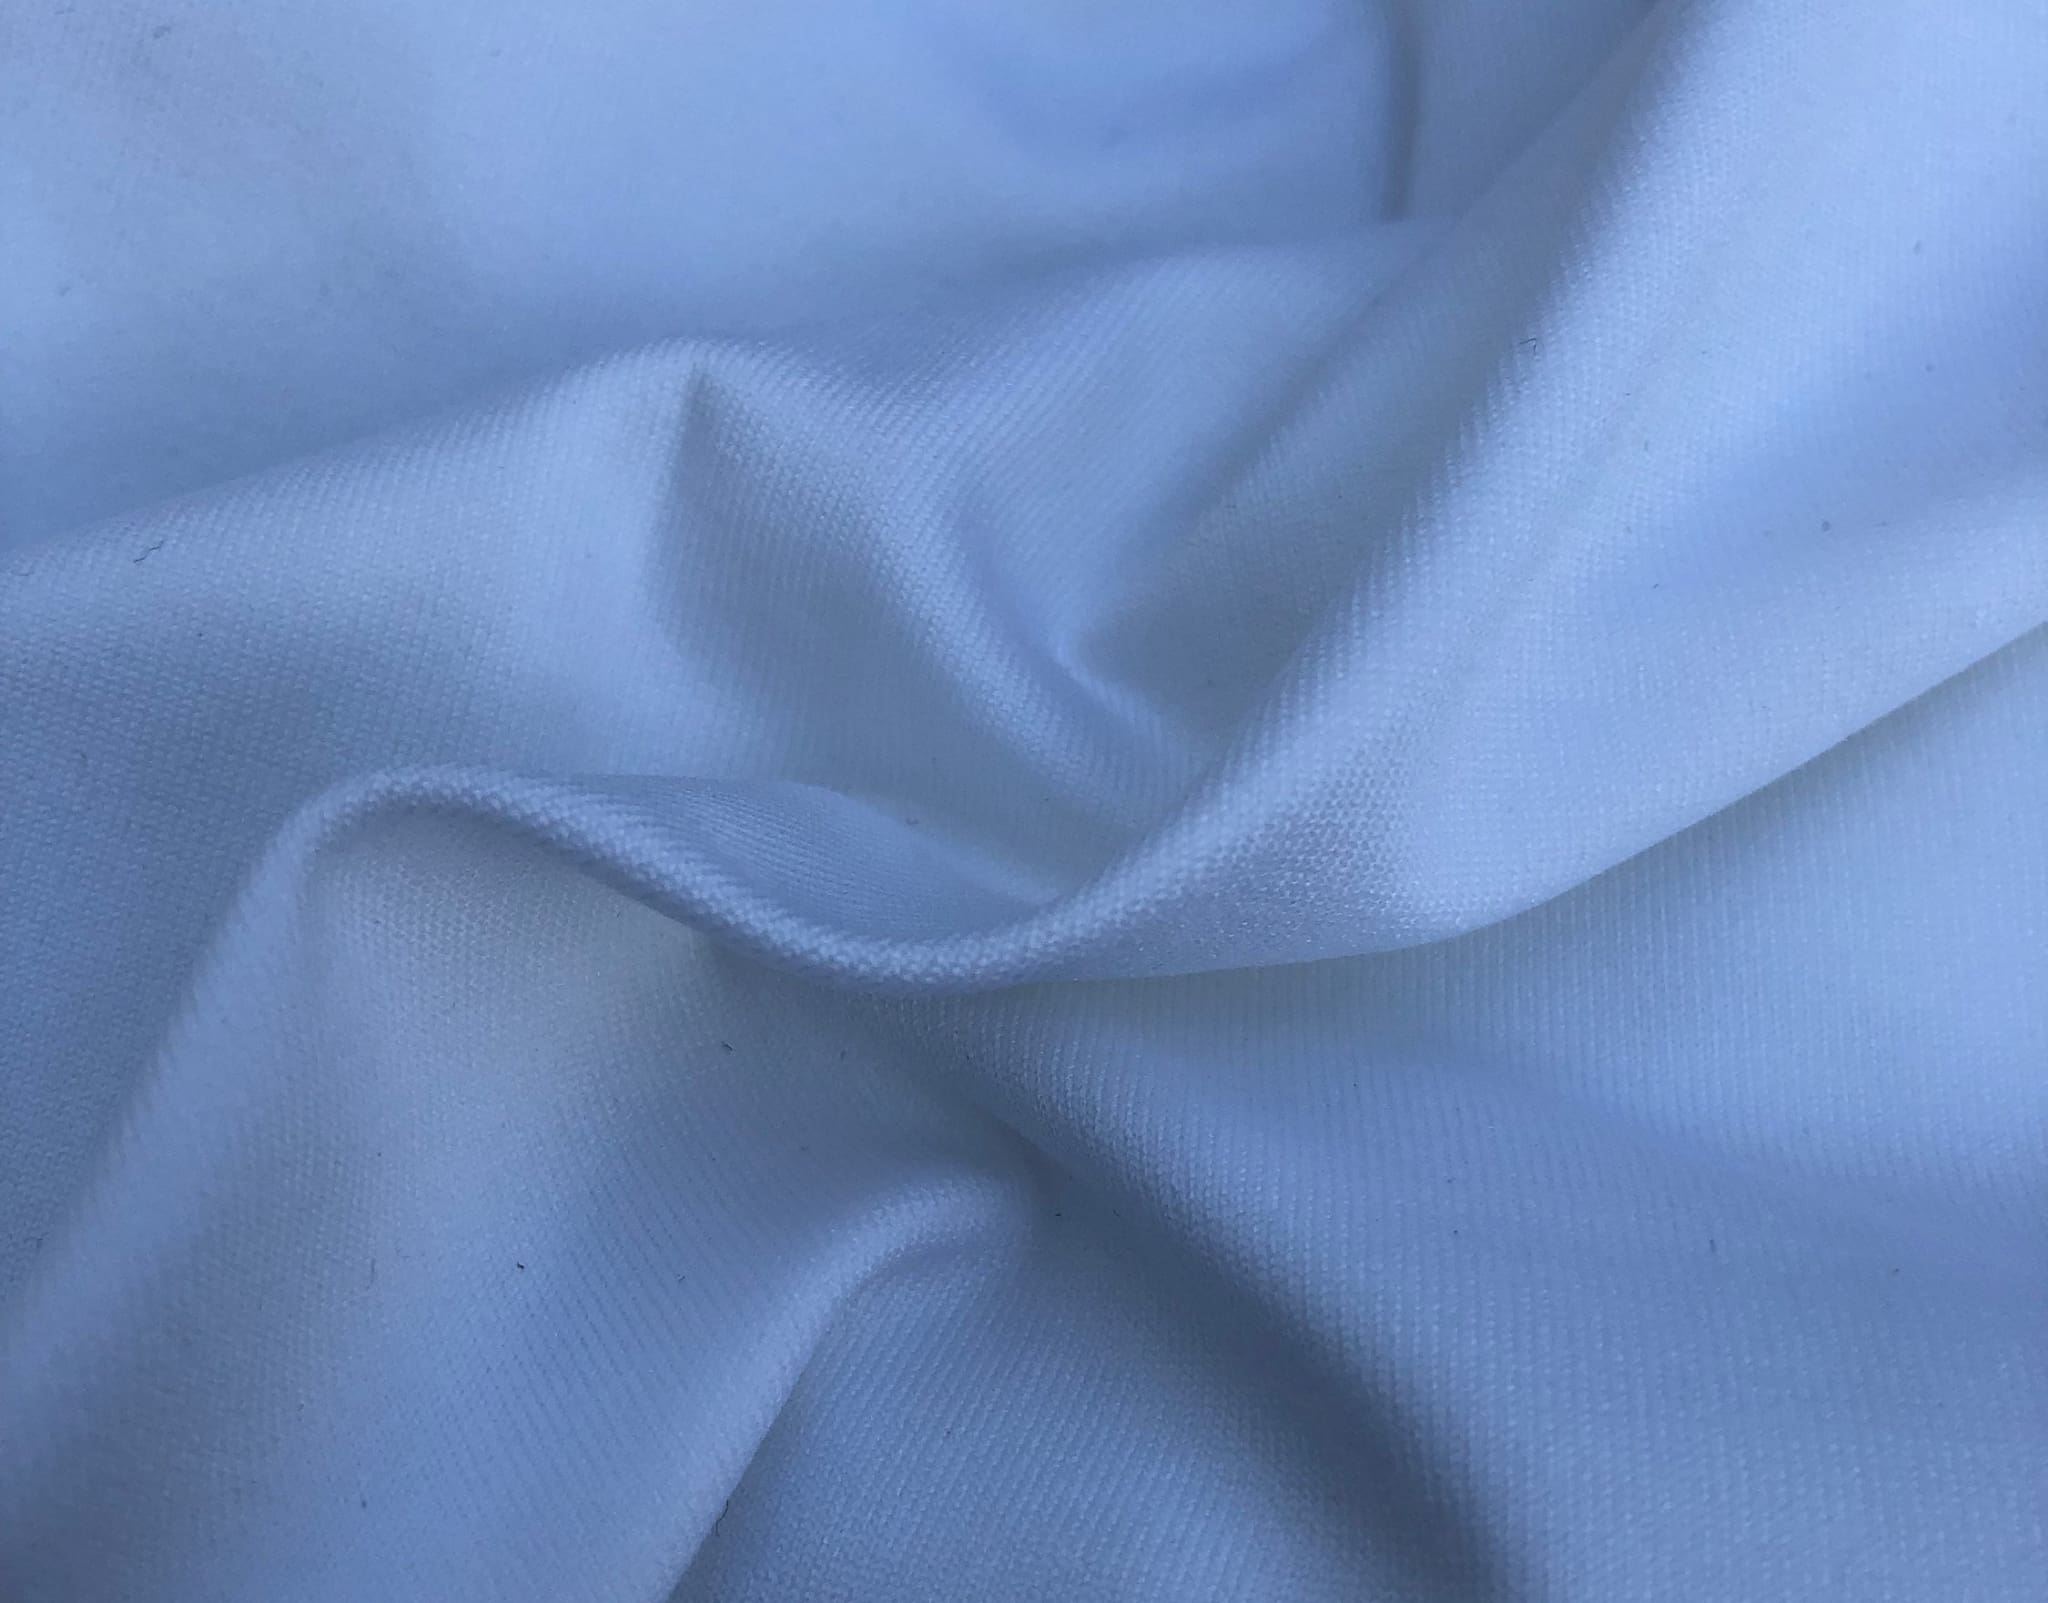 58 White Nylon Spandex Elastane Lycra Blend Knit Fabric By the